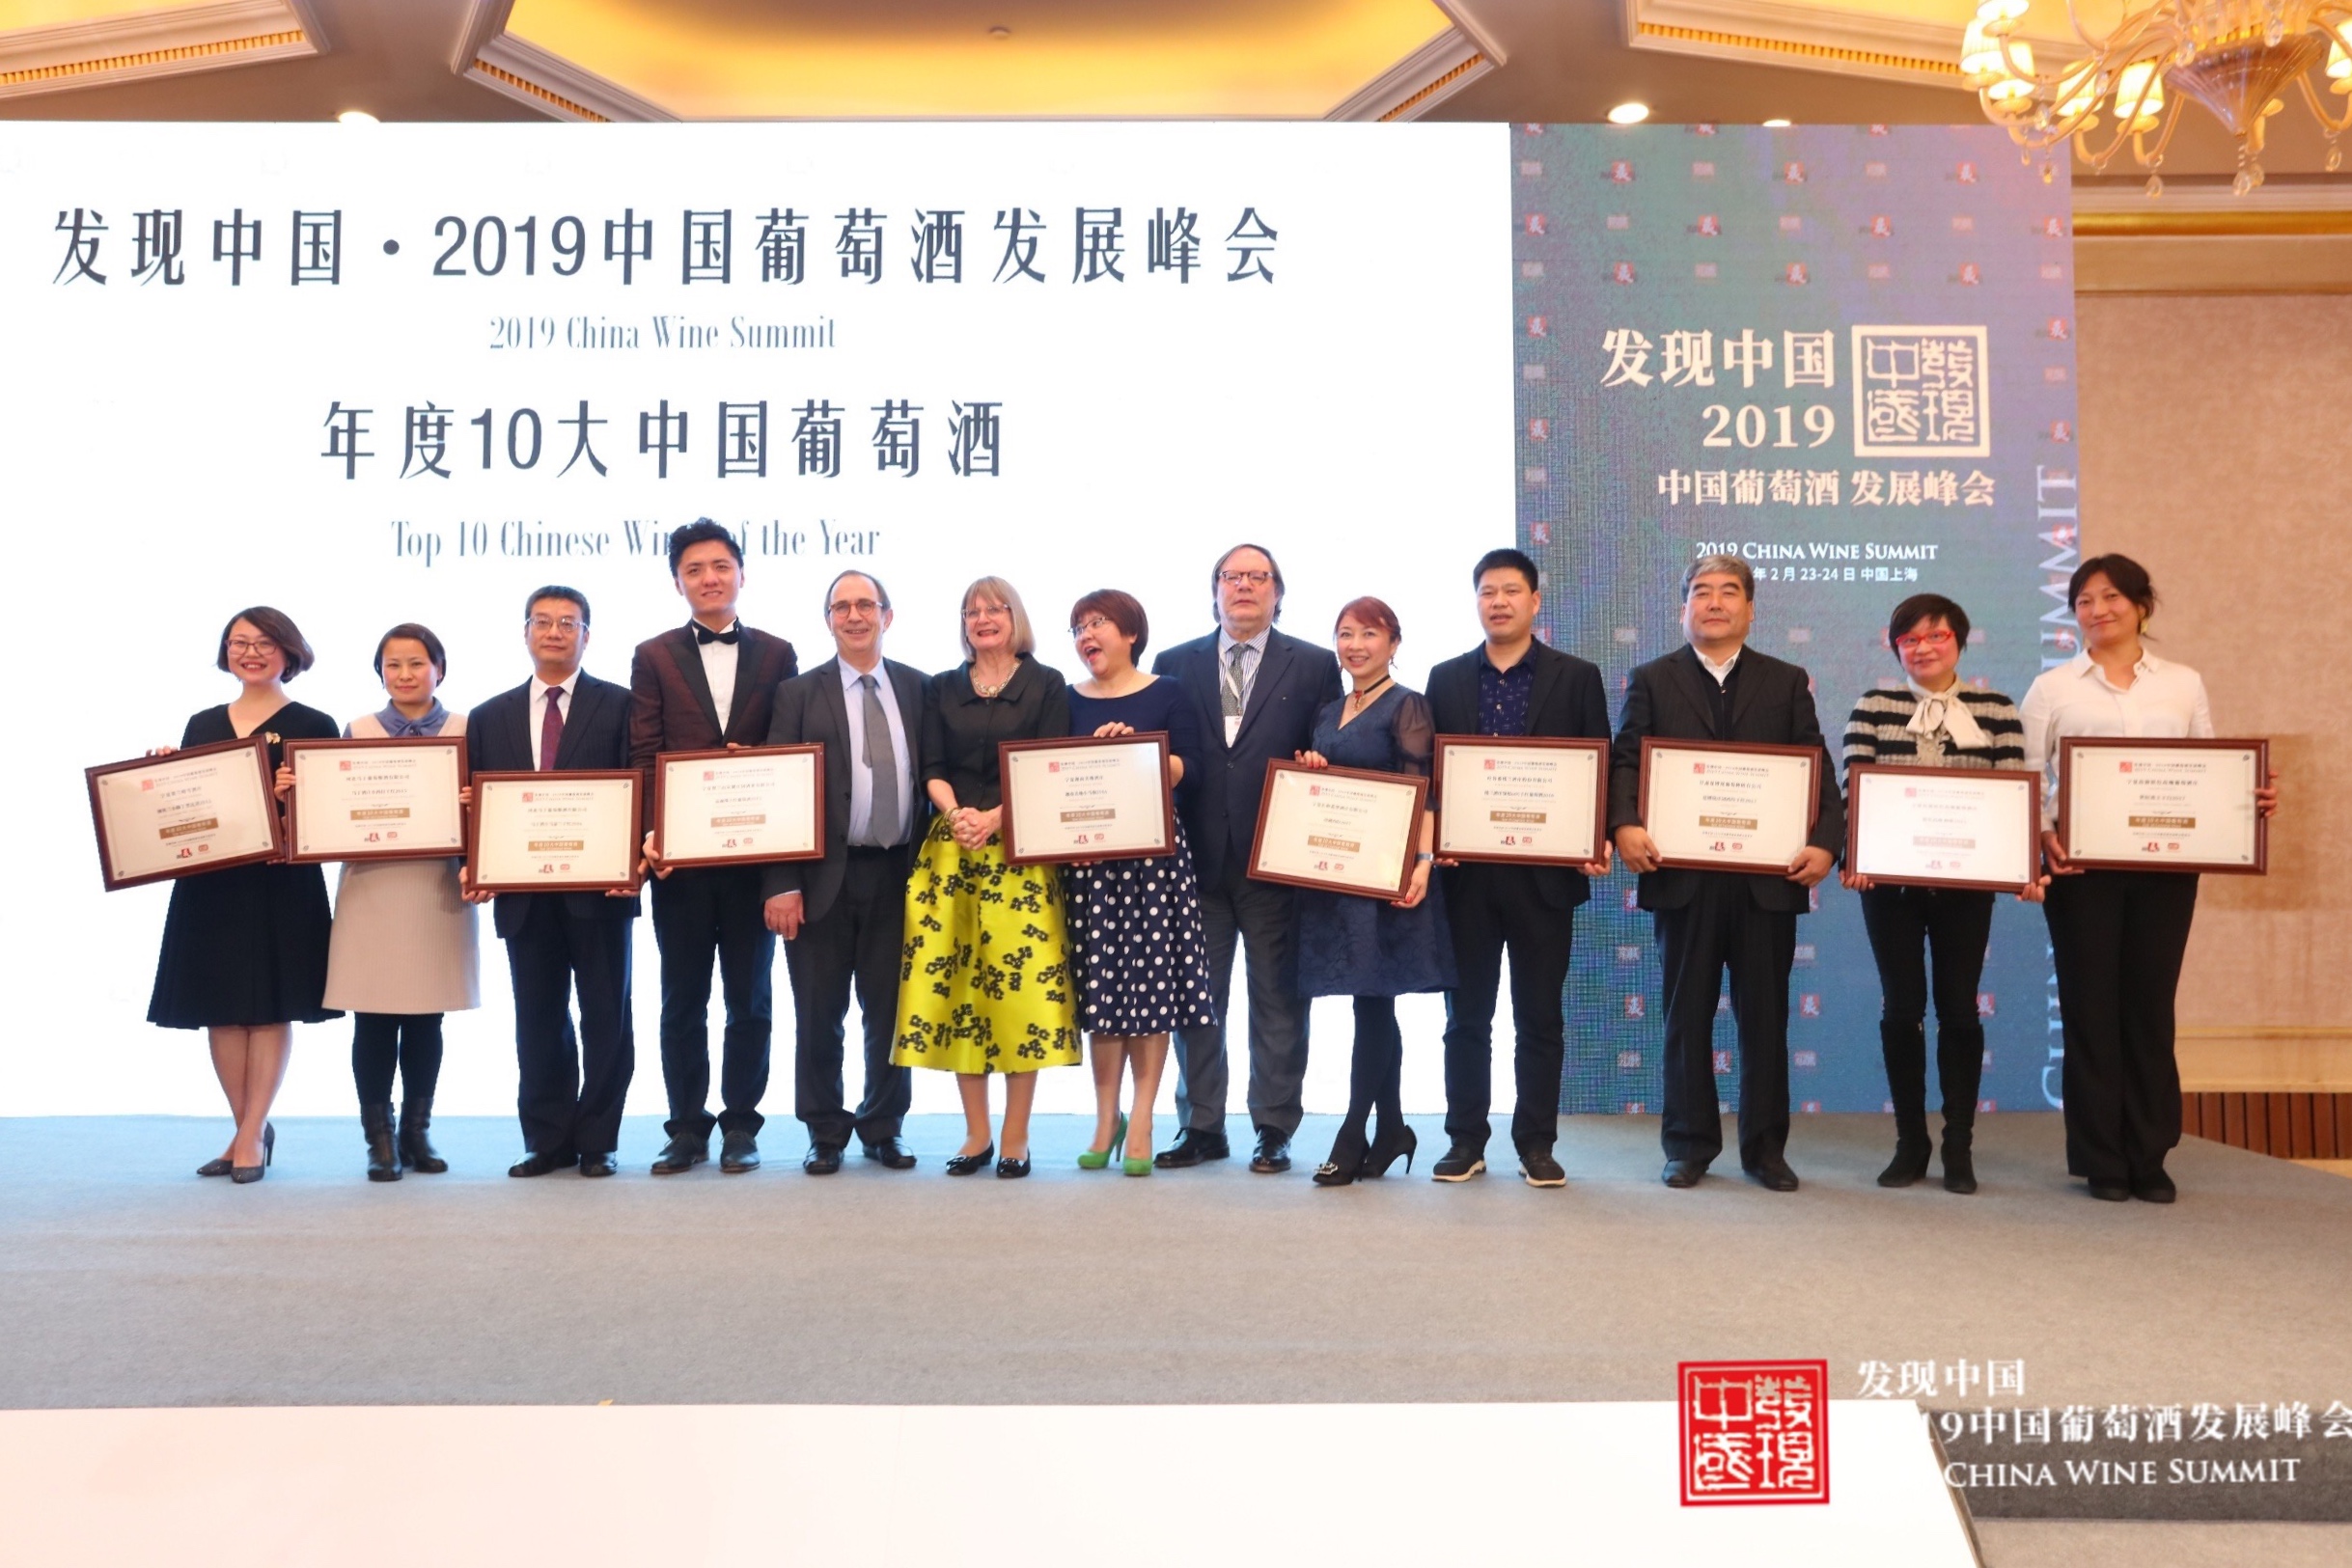 The 2019 Chinese Wine Summit met in Shanghai